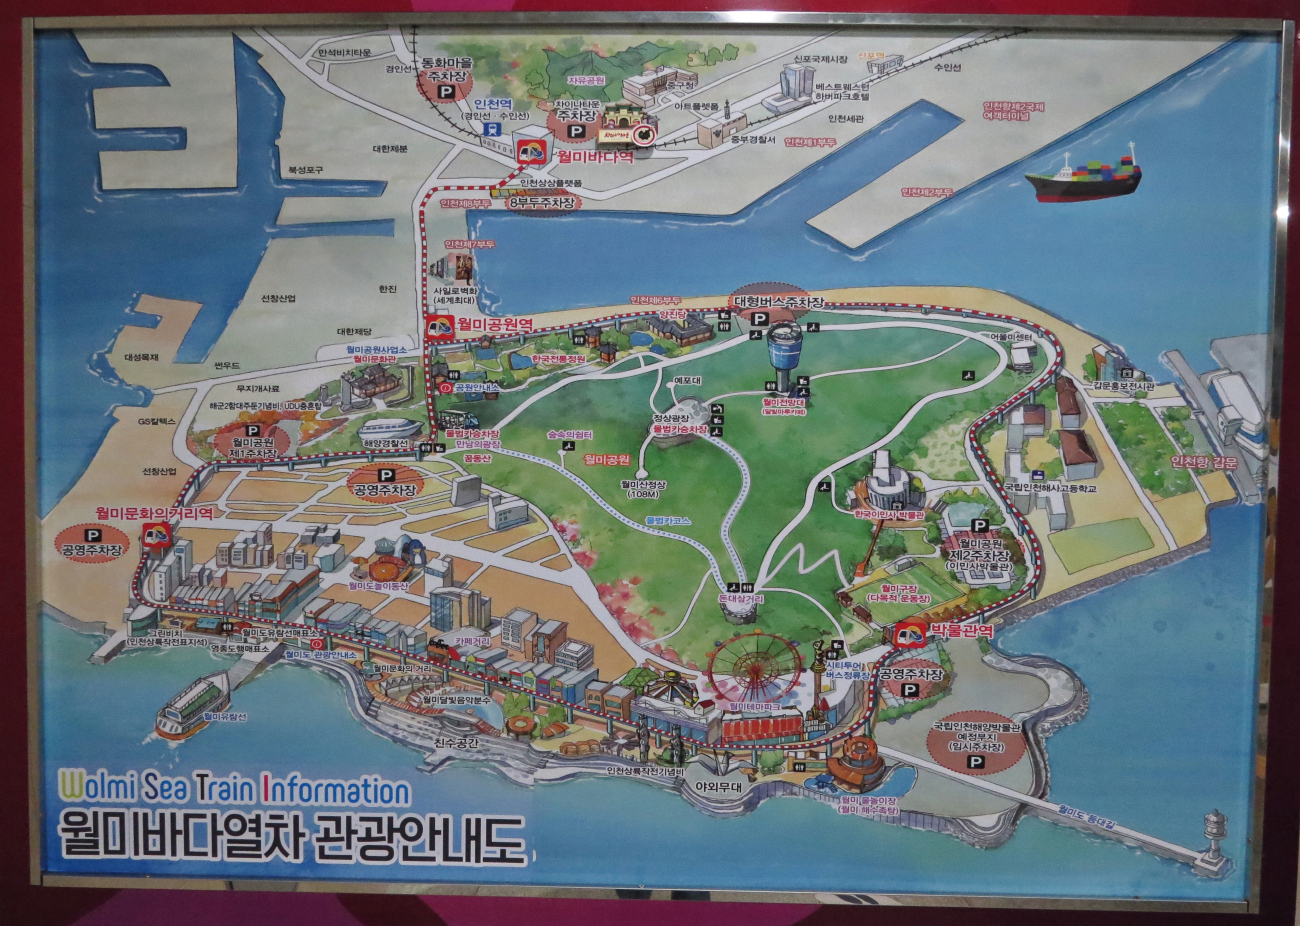 Сеульский регион — Морской поезд Волми (월미바다열차); Сеульский регион — Схемы (지도)